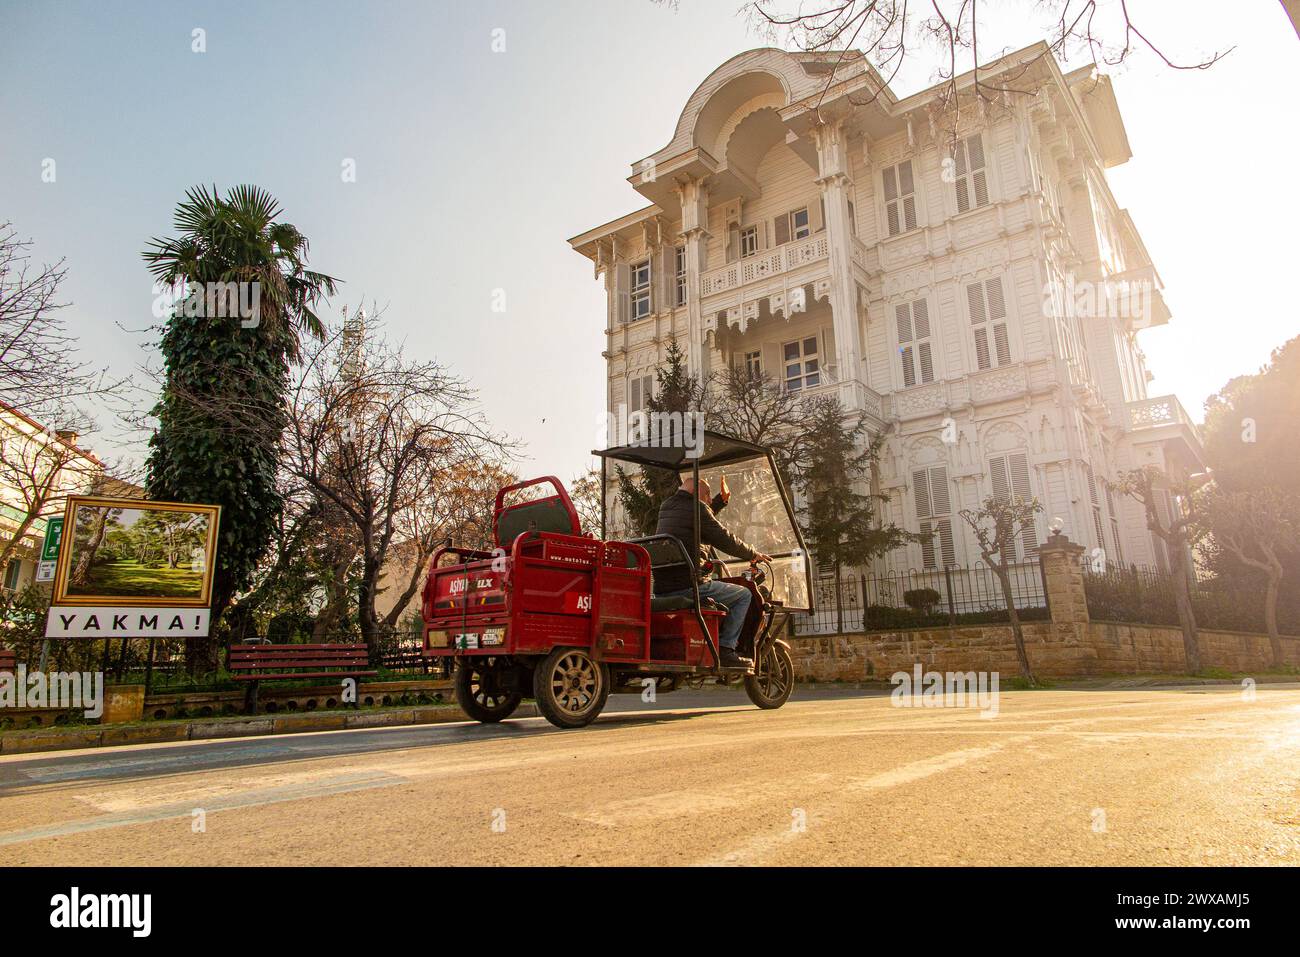 Hauptsächlich carless, drei-Rad-Lkws sind eine beliebte Möglichkeit, um Büyükada, die größte der Prinzeninseln in der Nähe von Istanbul, Türkei, zu erkunden. Stockfoto